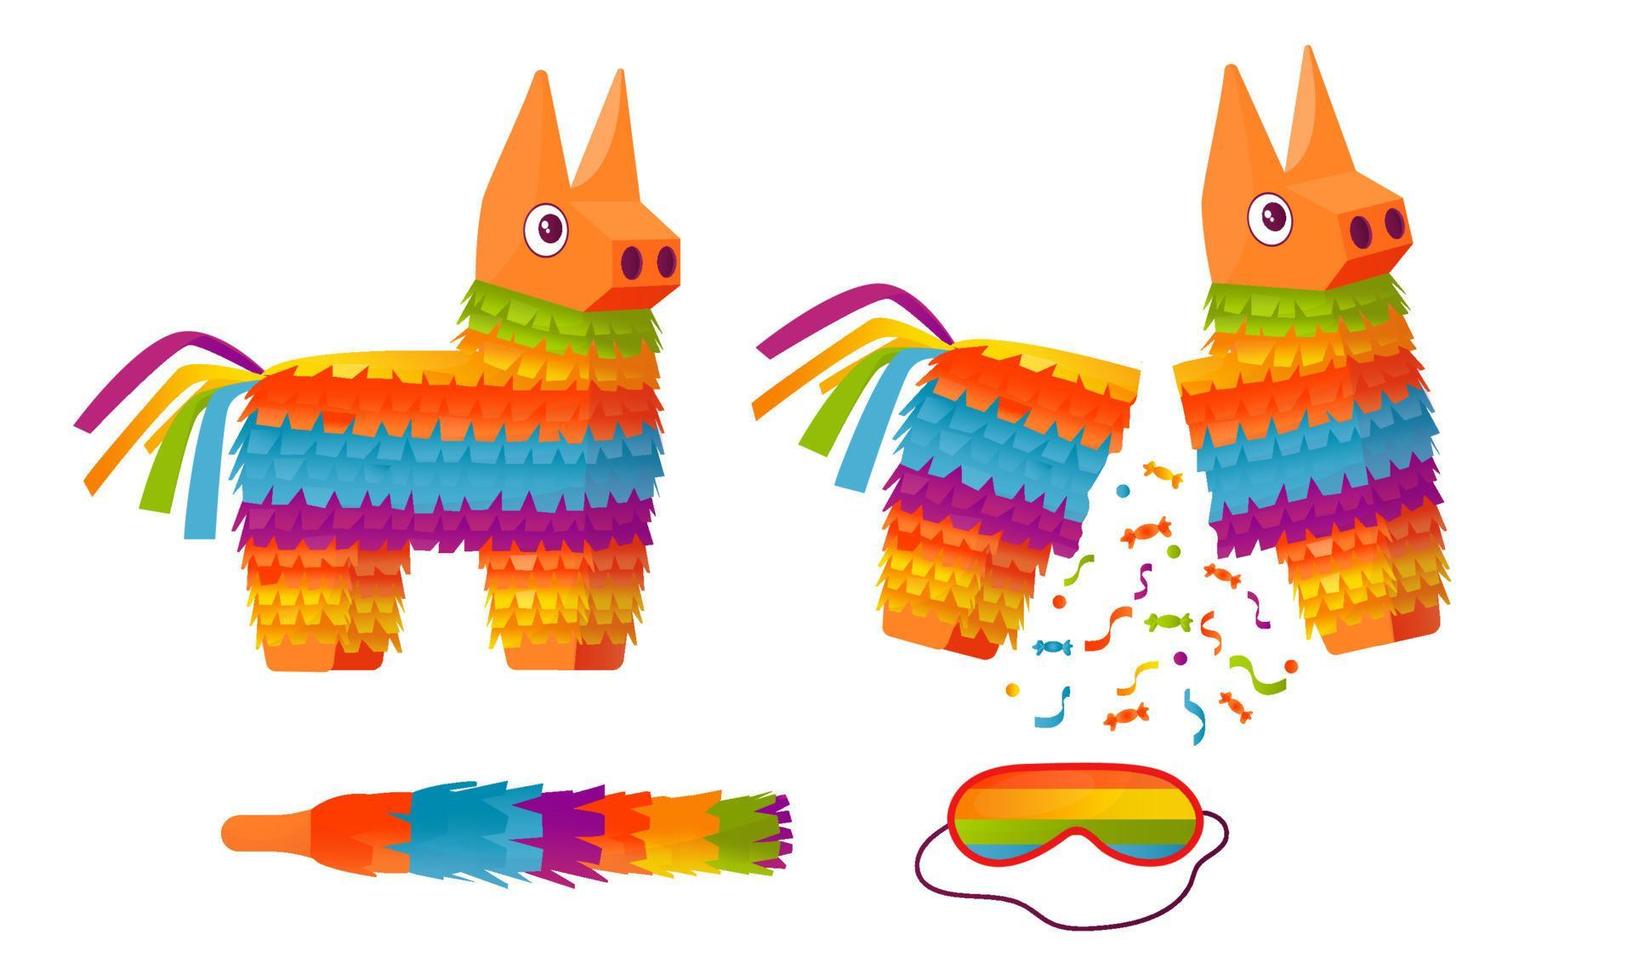 Piñata zum Geburtstag. Wellpappenspielzeug mit Süßigkeiten oder einer Überraschung im Inneren. Vektor-Cartoon-Illustration vektor